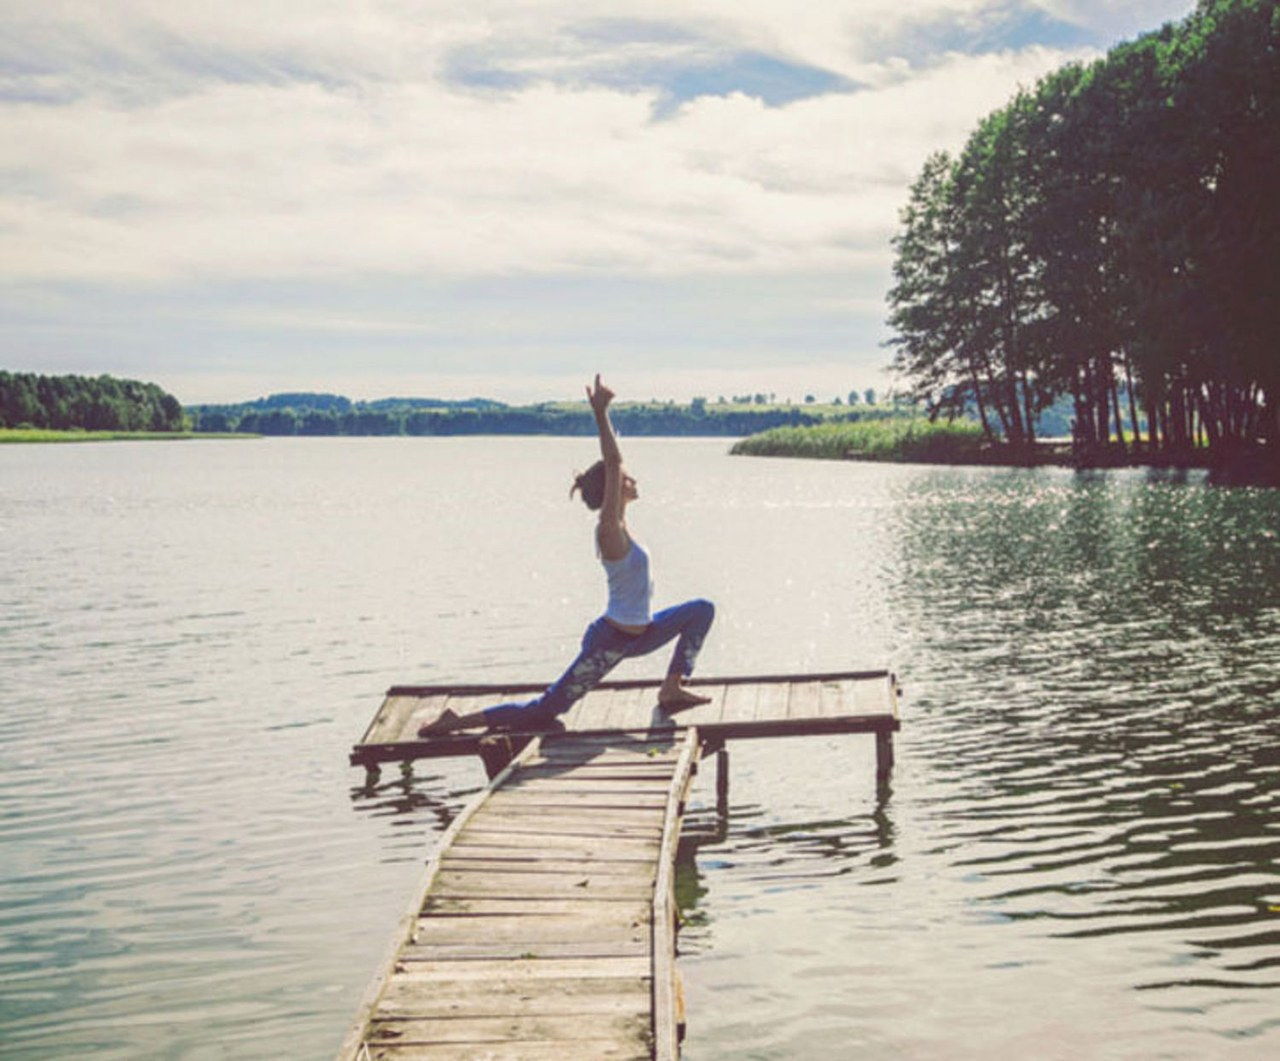 瑜伽 pose on the lake